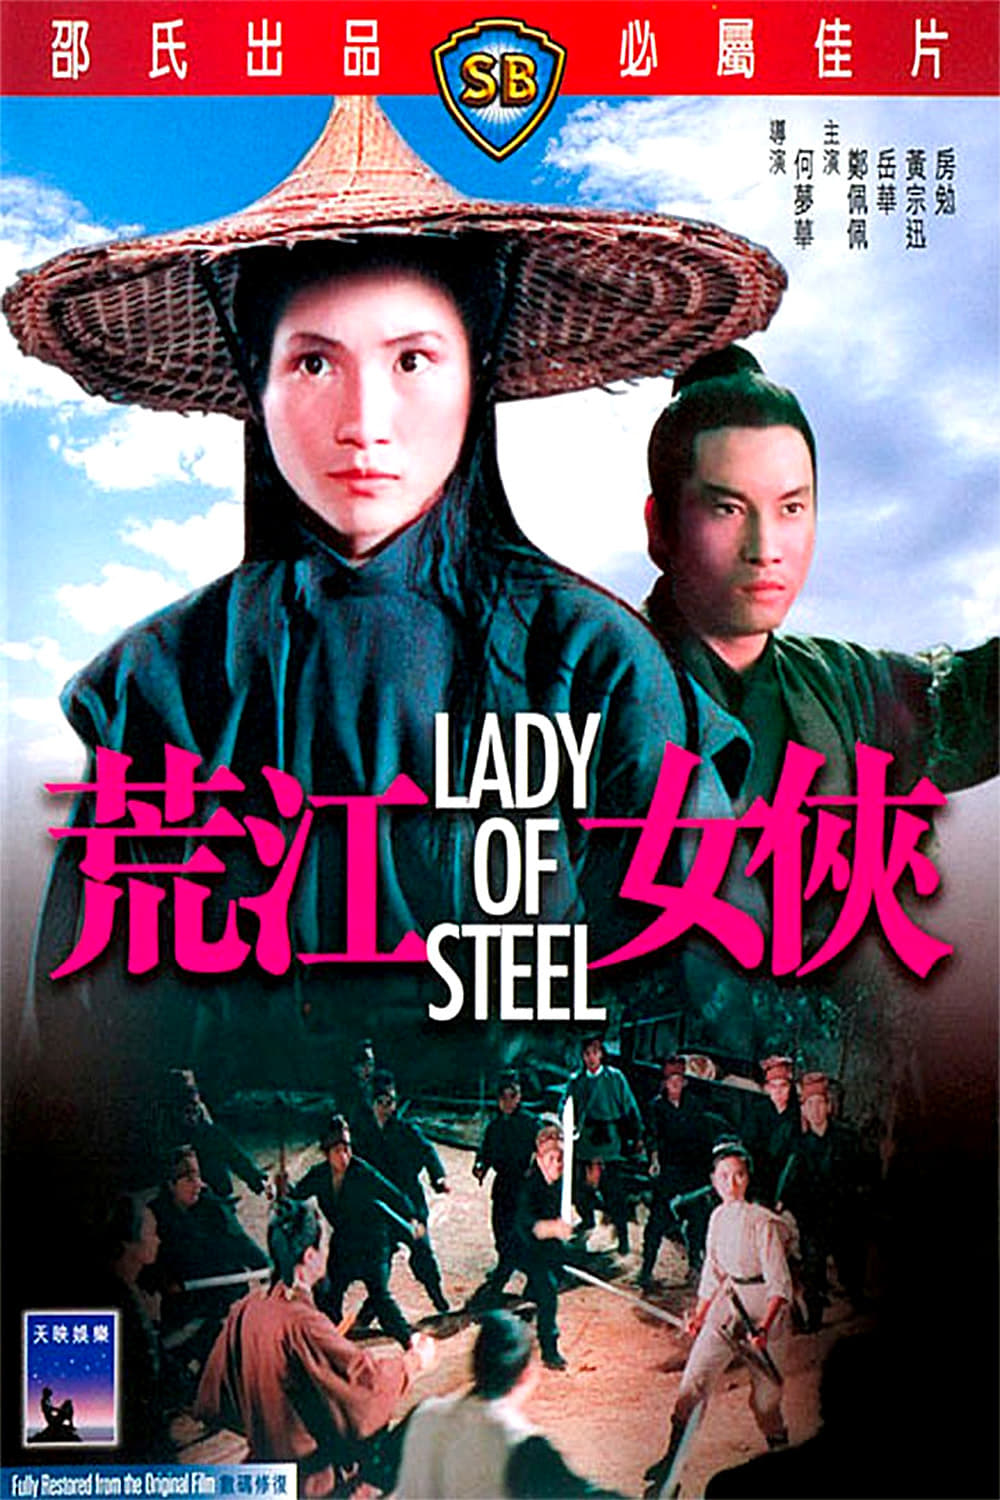 Plakat von "Lady of Steel"